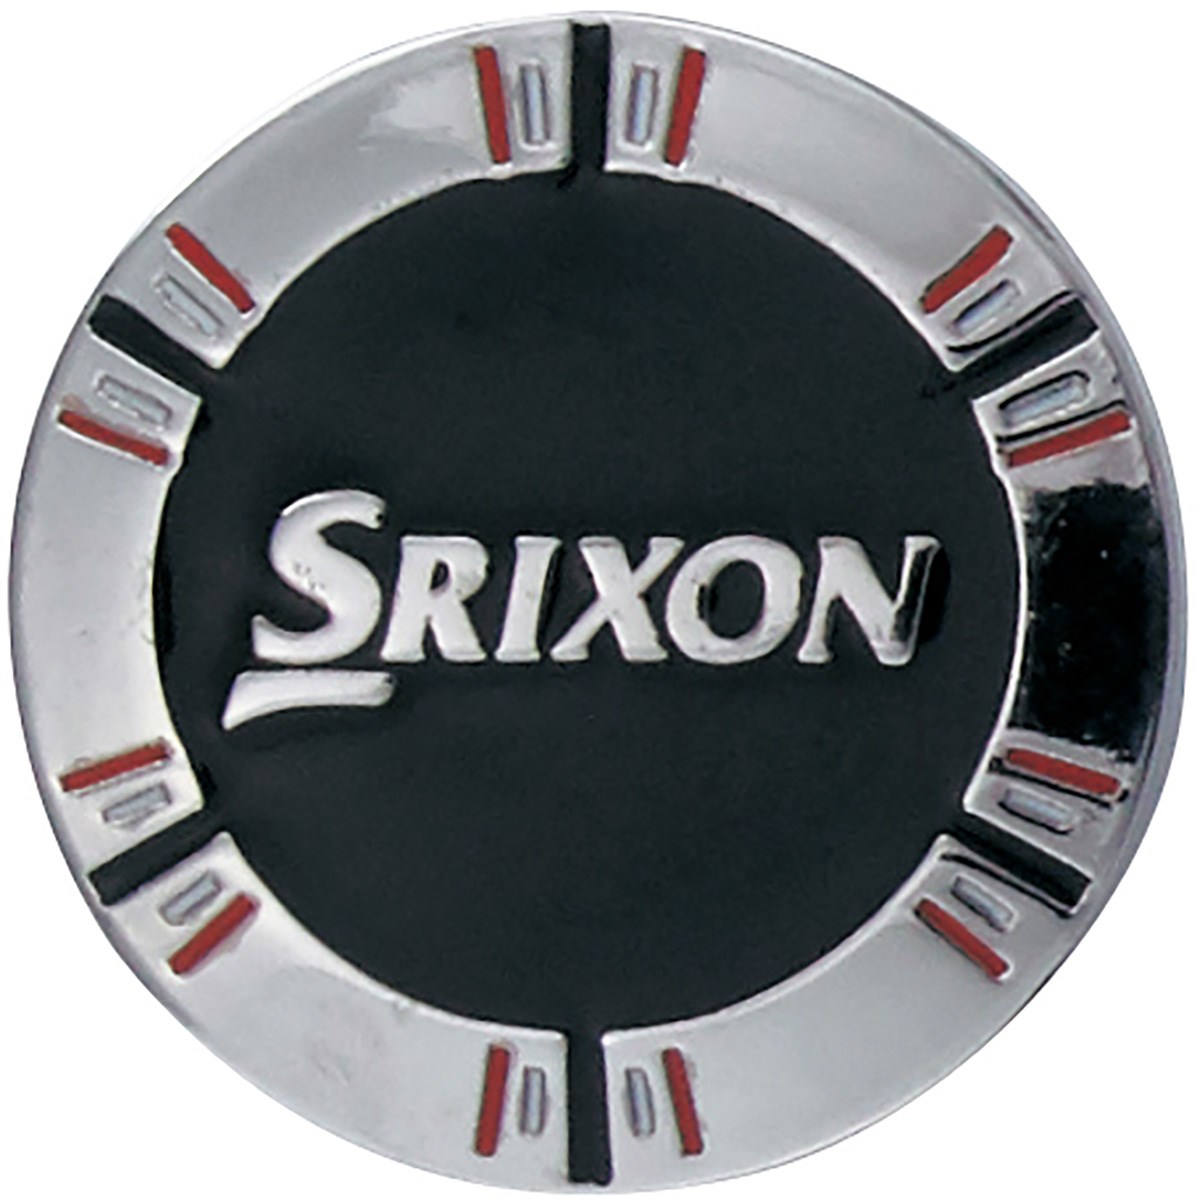 一流の品質 DUNLOP ダンロップ 日本正規品 SRIXON スリクソン クリップマーカー GGF-15334 riosmauricio.com